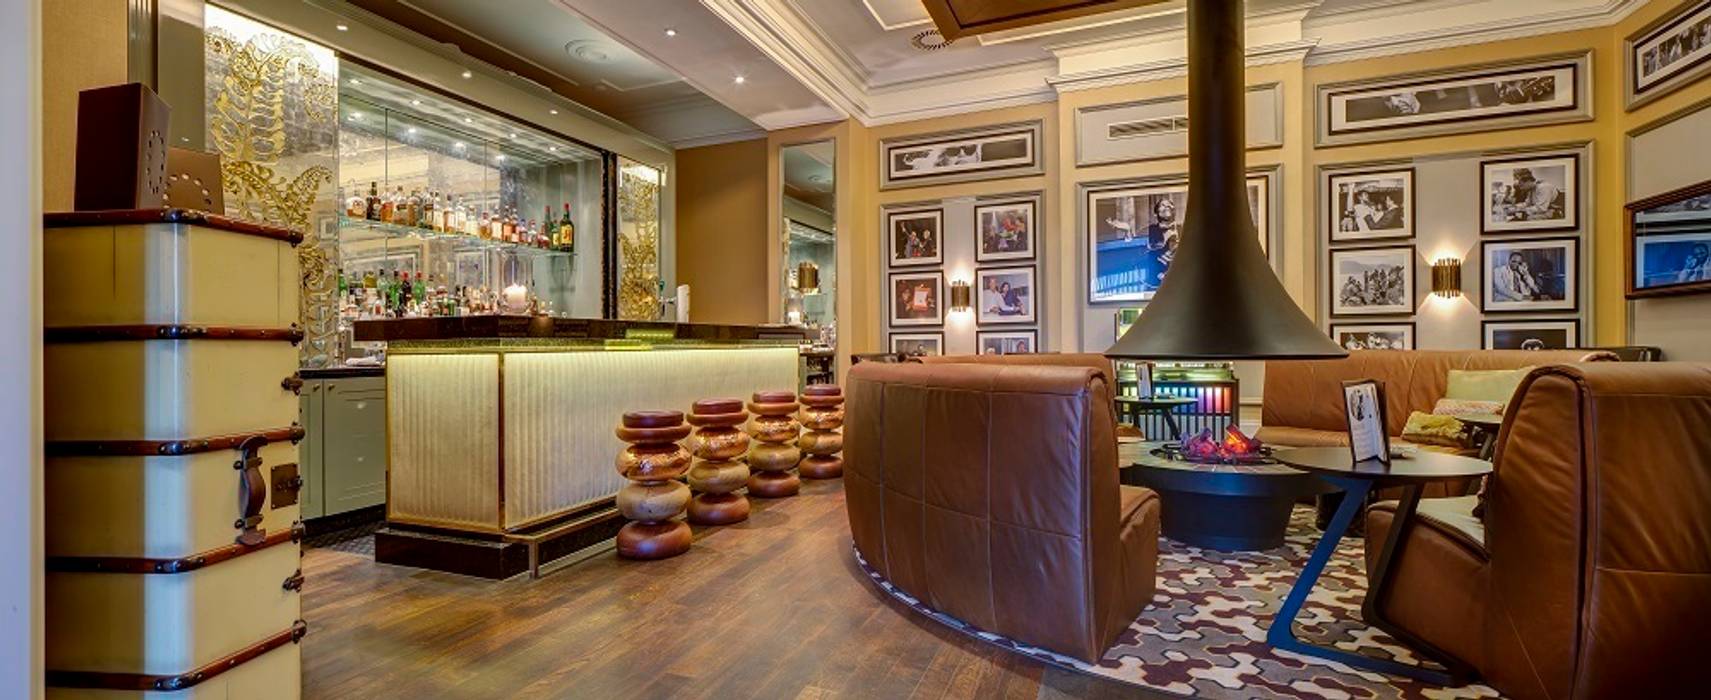 Montreux Jazz Café Fairmont by Aedas Interiors Architecture by Aedas Commercial spaces Gastronomy